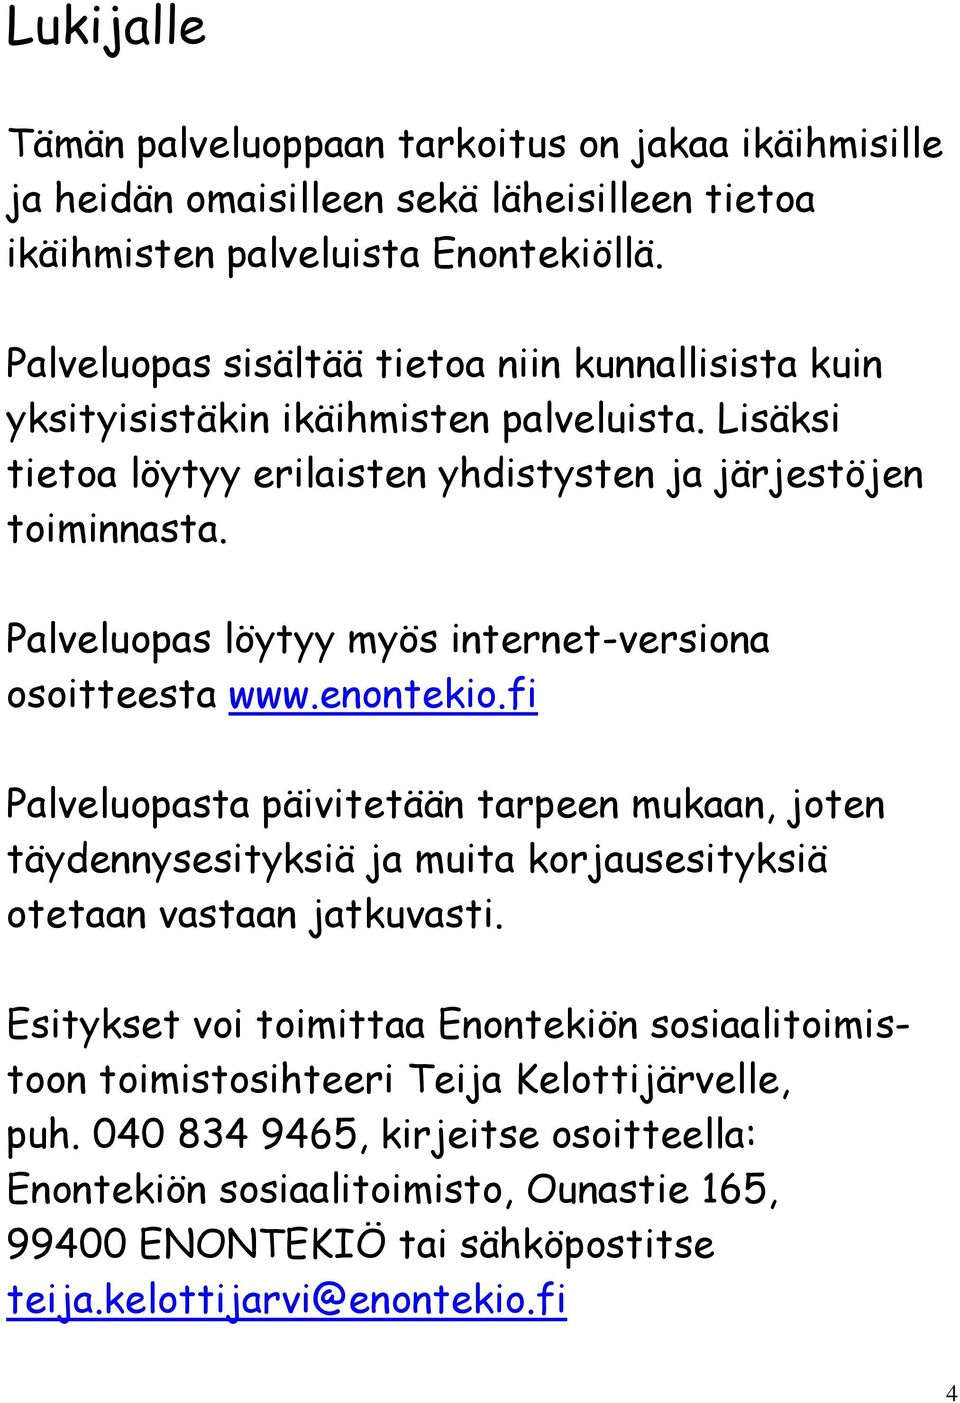 Palveluopas löytyy myös internet-versiona osoitteesta www.enontekio.